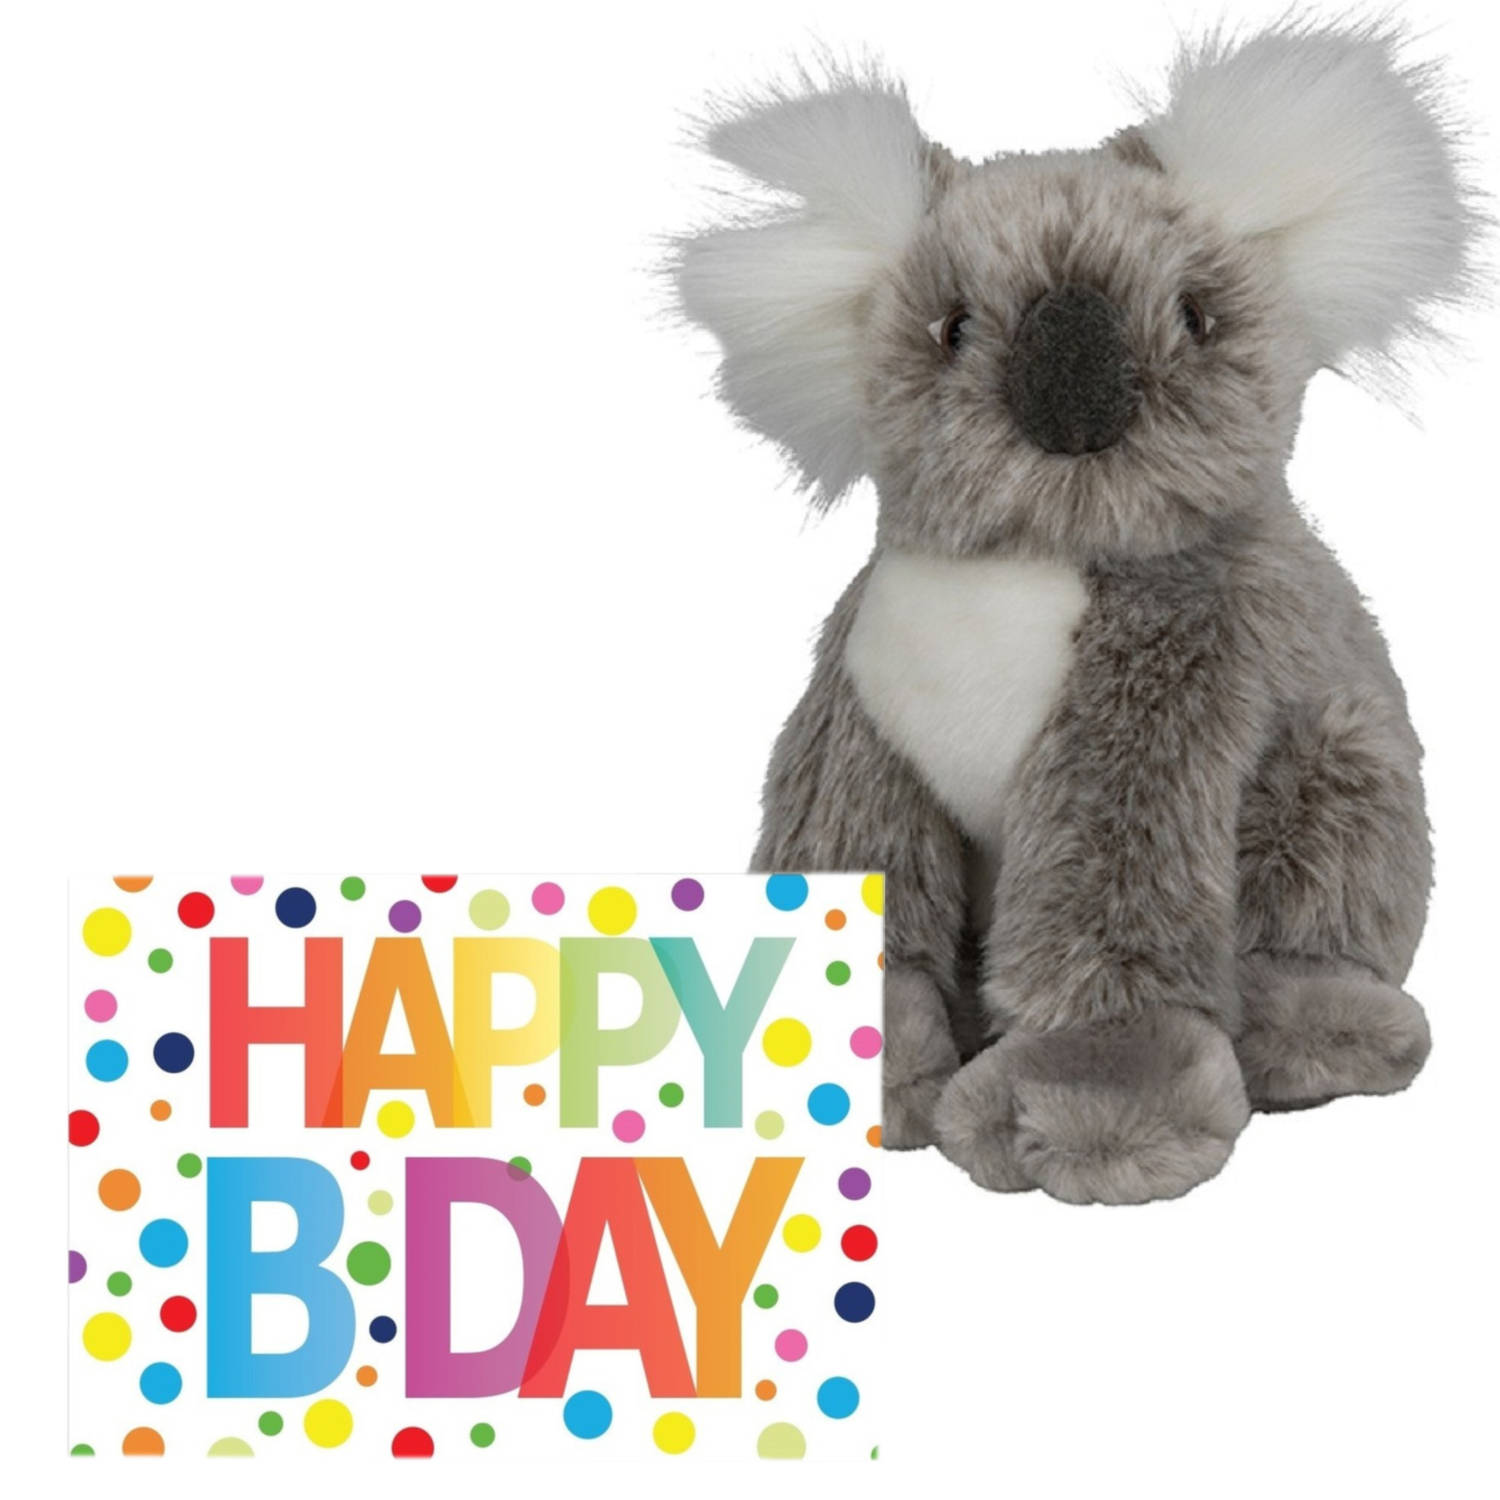 Pluche knuffel koala beer 18 cm met A5-size Happy Birthday wenskaart Knuffeldier